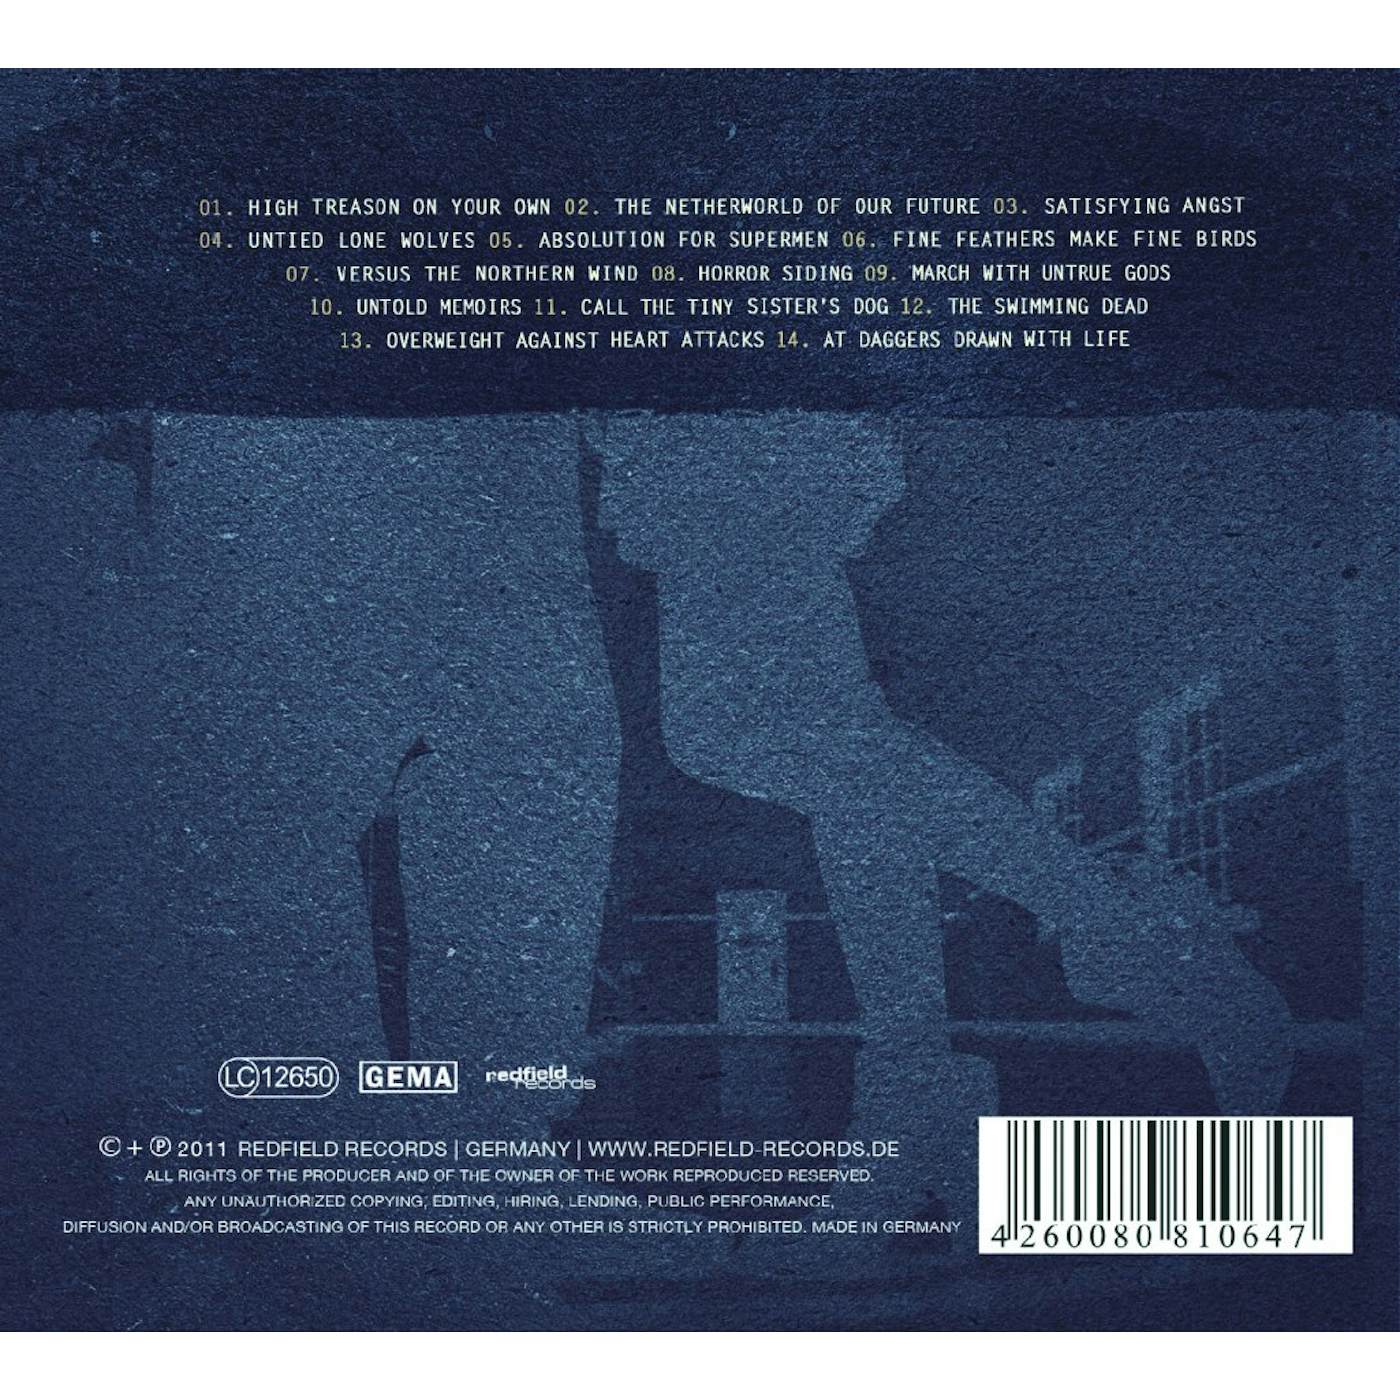 The Blackout Argument - Detention - CD (2011)